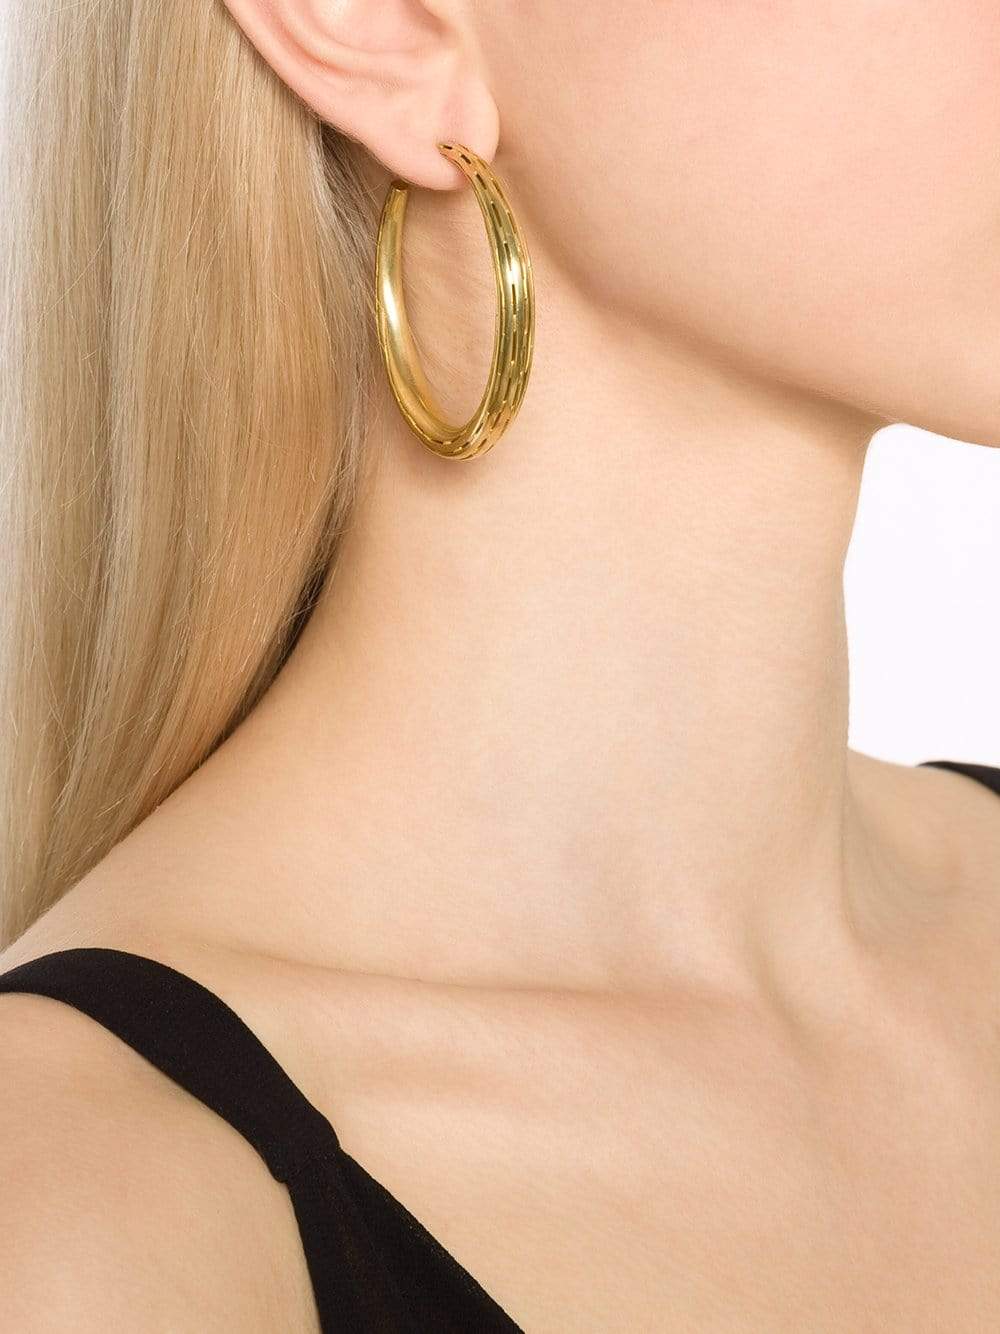 VAUBEL-Ridged Large Hoop Earrings-GRN/GOLD